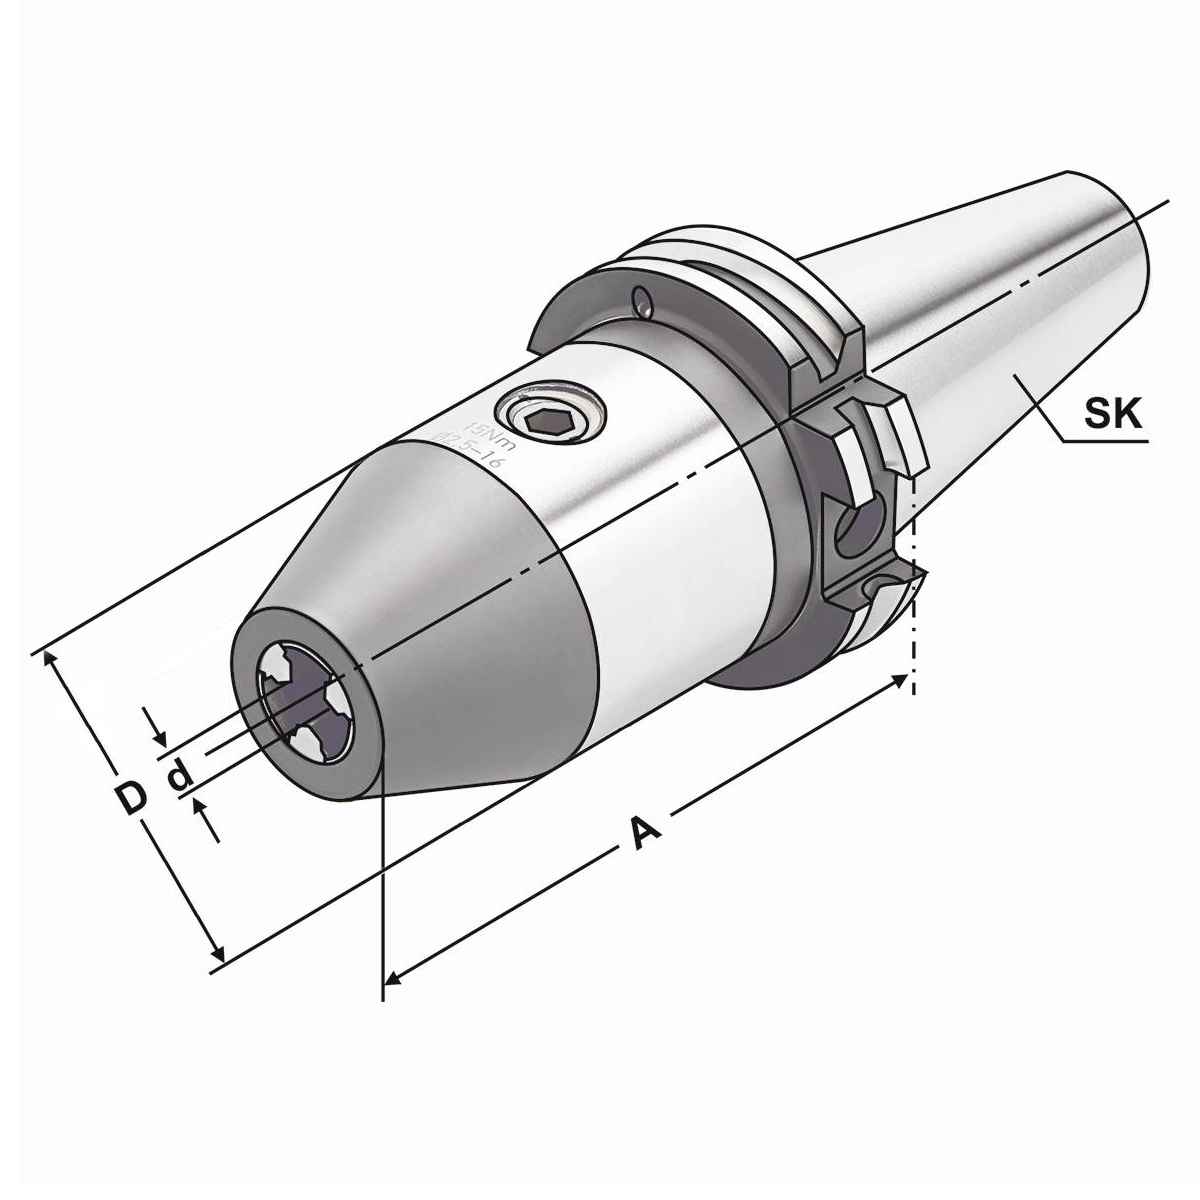 CNC-Bohrfutter SK 40-2,5/16-95 DIN 69871 AD